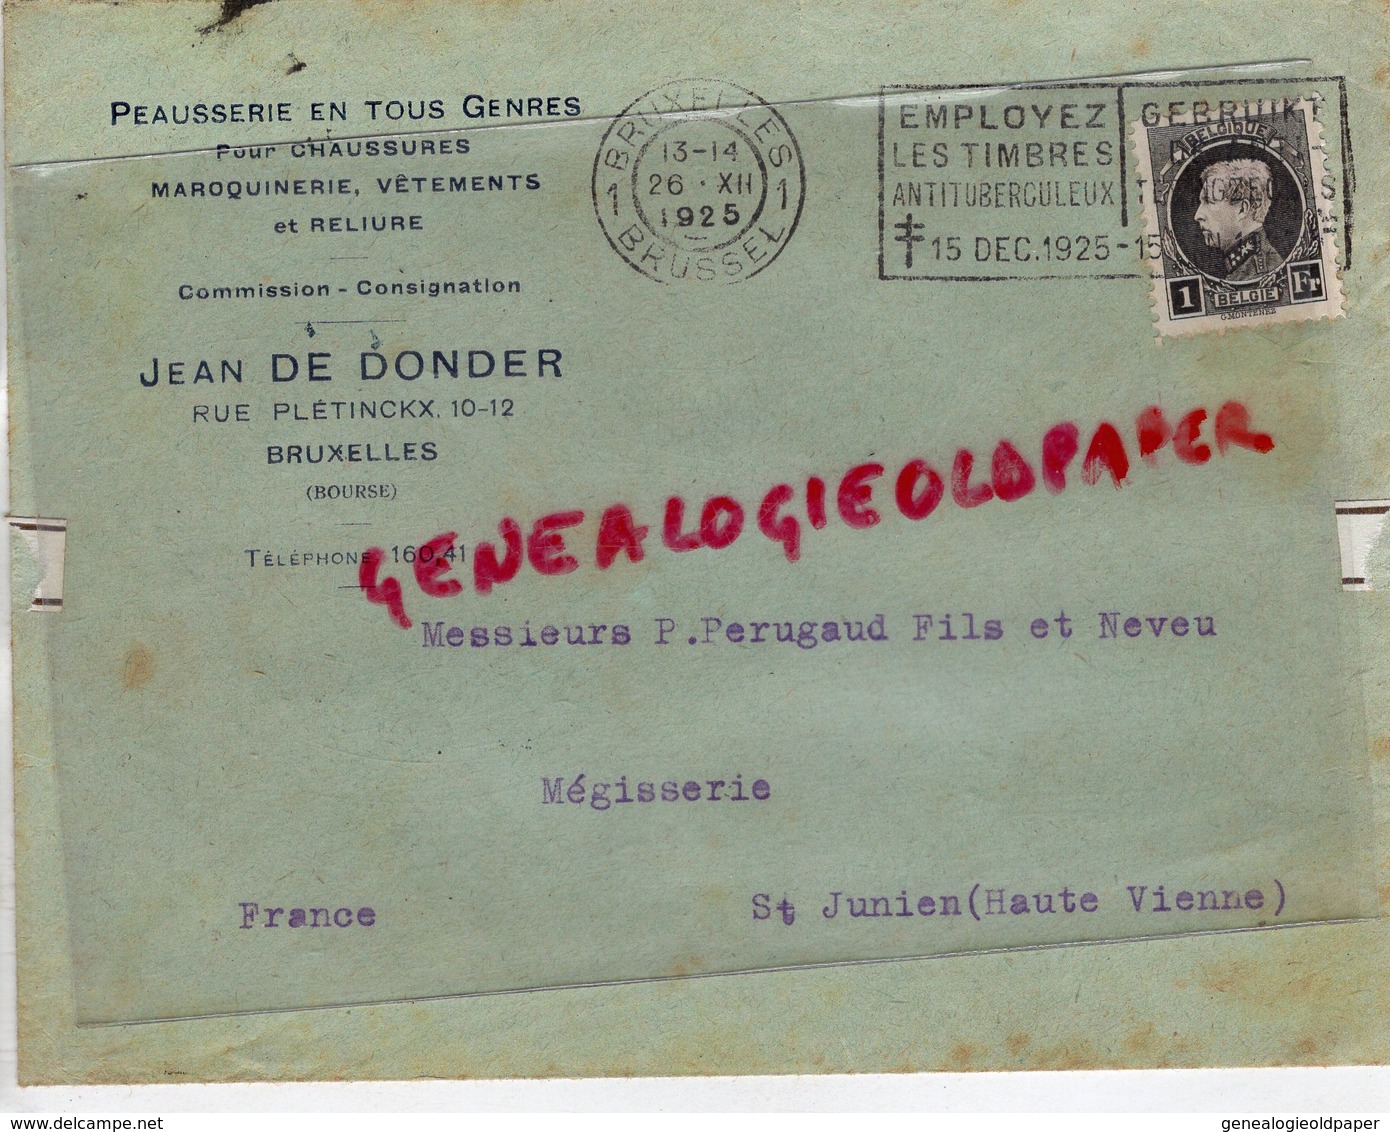 BELGIQUE-BRUXELLES- ENVELOPPE JEAN DE DONDER-PEAUSSERIE-10 RUE PLETINCKX-A PERUCAUD MEGISSERIE SAINT JUNIEN-1925 - Ambachten